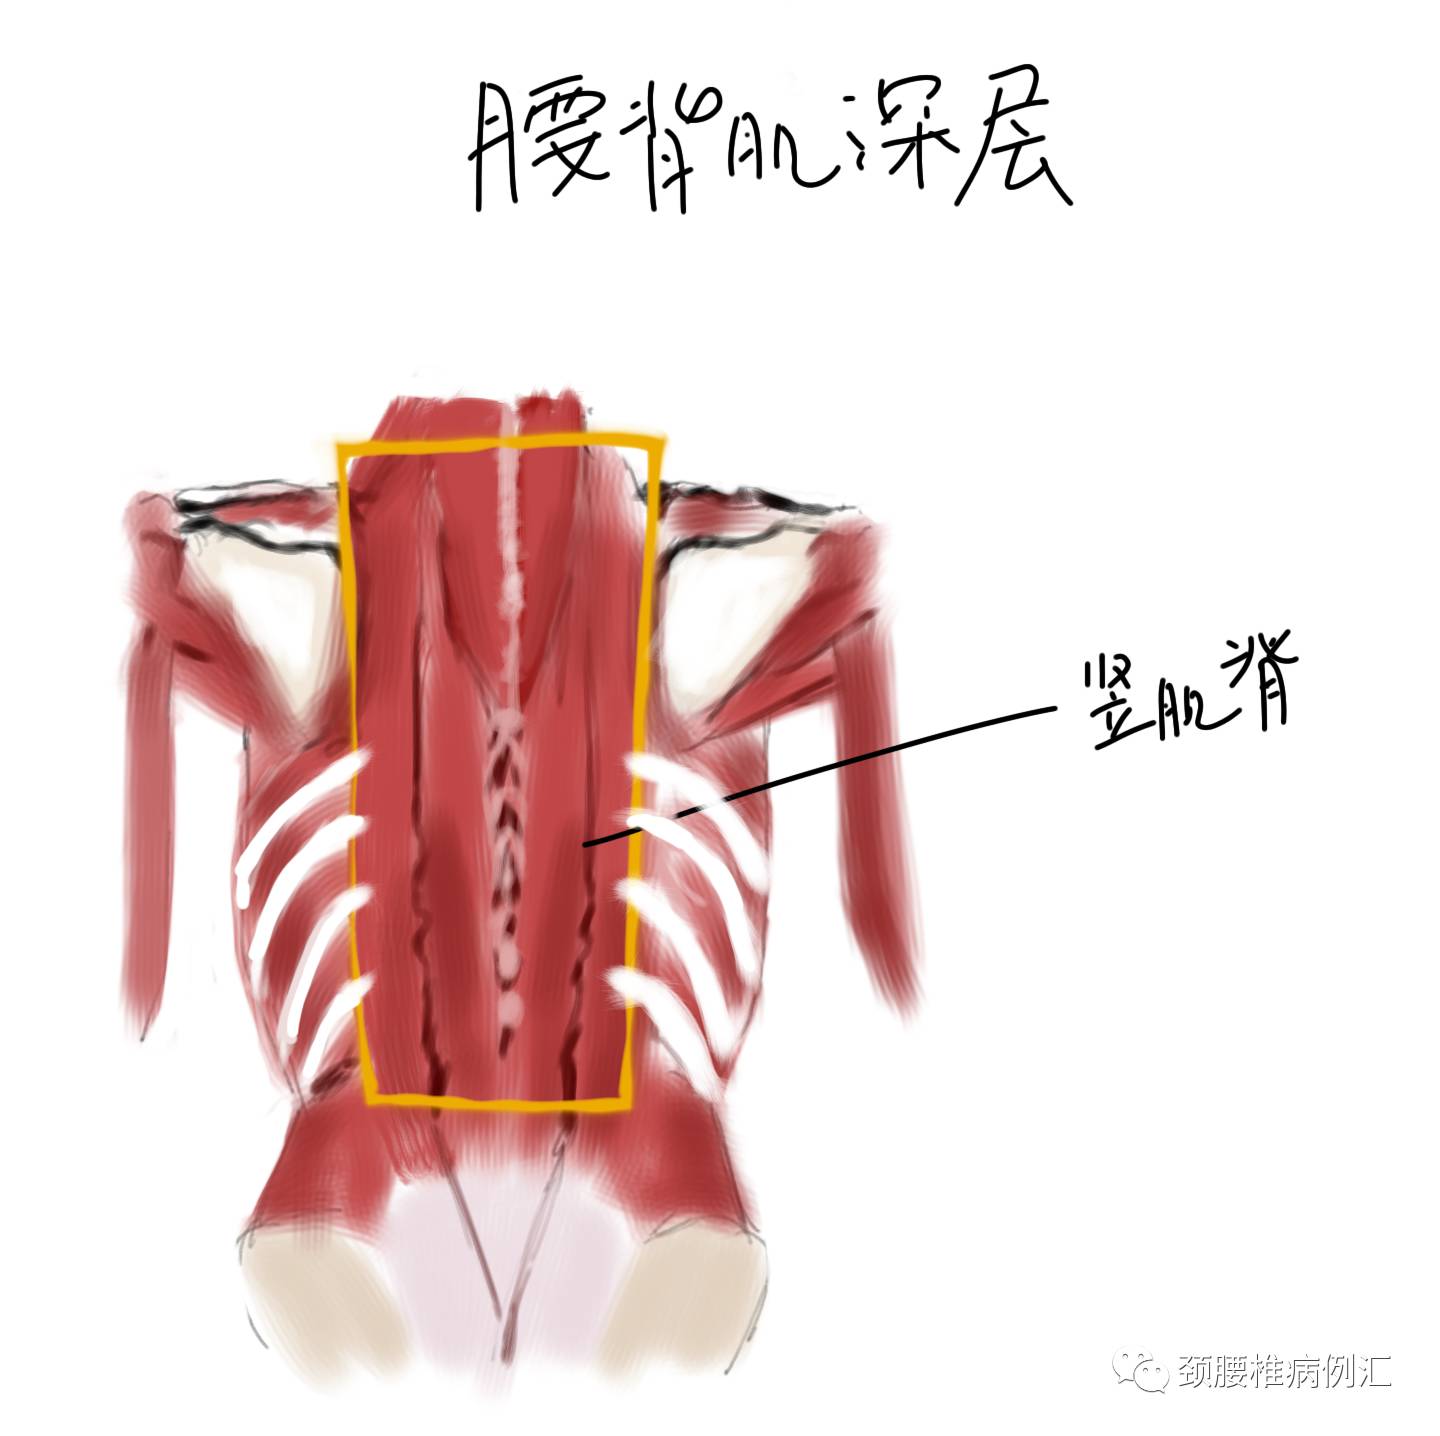 竖脊肌,当然在它的深部还有很多小肌肉,在这里就不一一介绍了